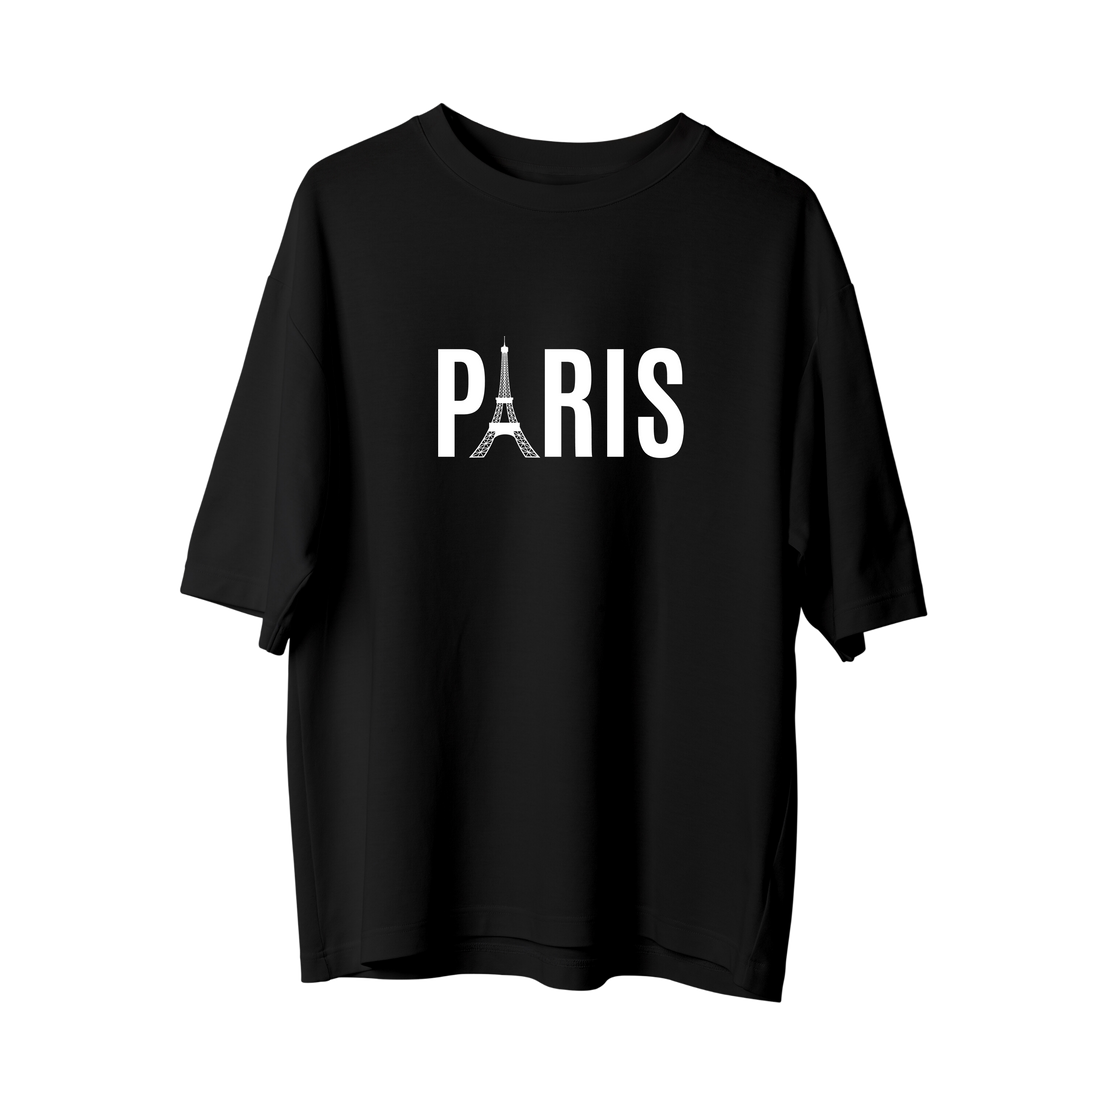 Paris - Oversize T-Shirt